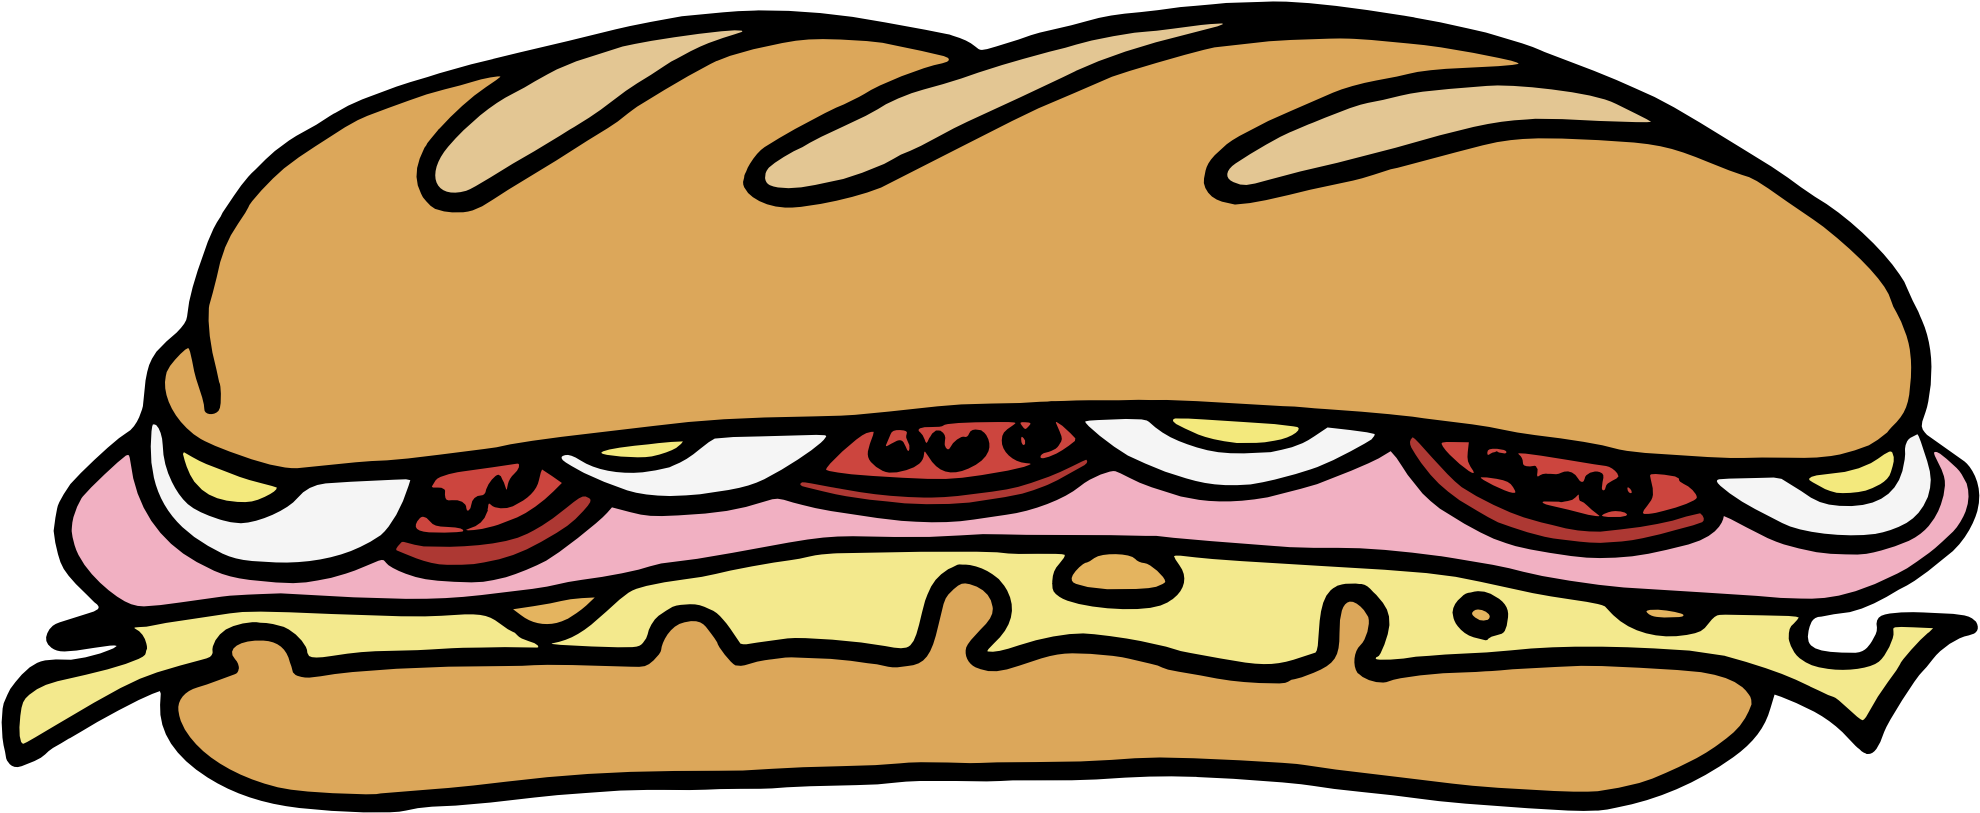 Sub Sandwich Clipart - Sub Sandwich Clipart (1979x822)